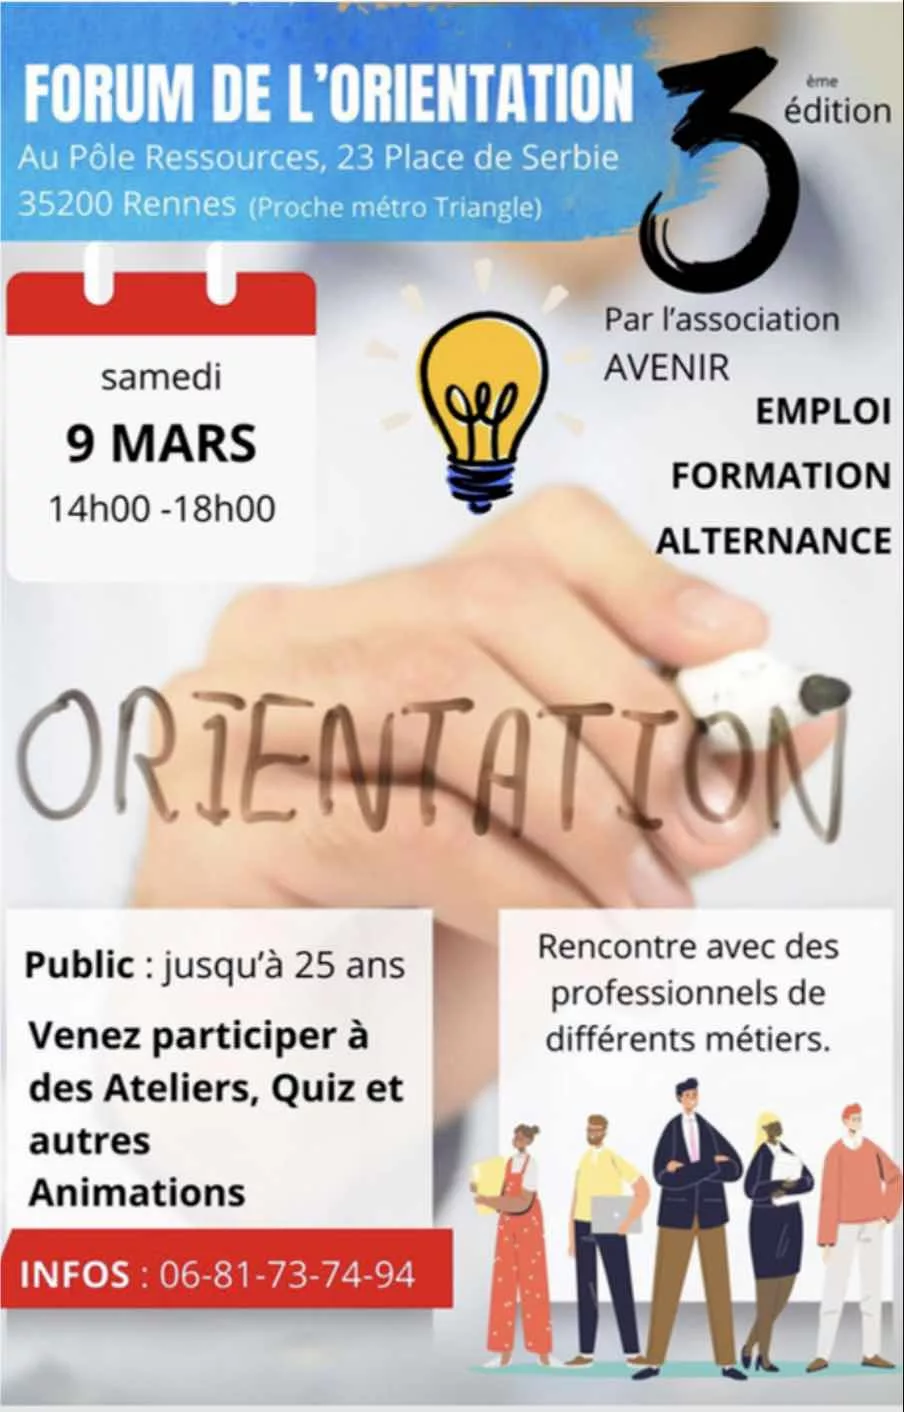 Forum des métiers et de l'orientation, association Avenir, Rennes